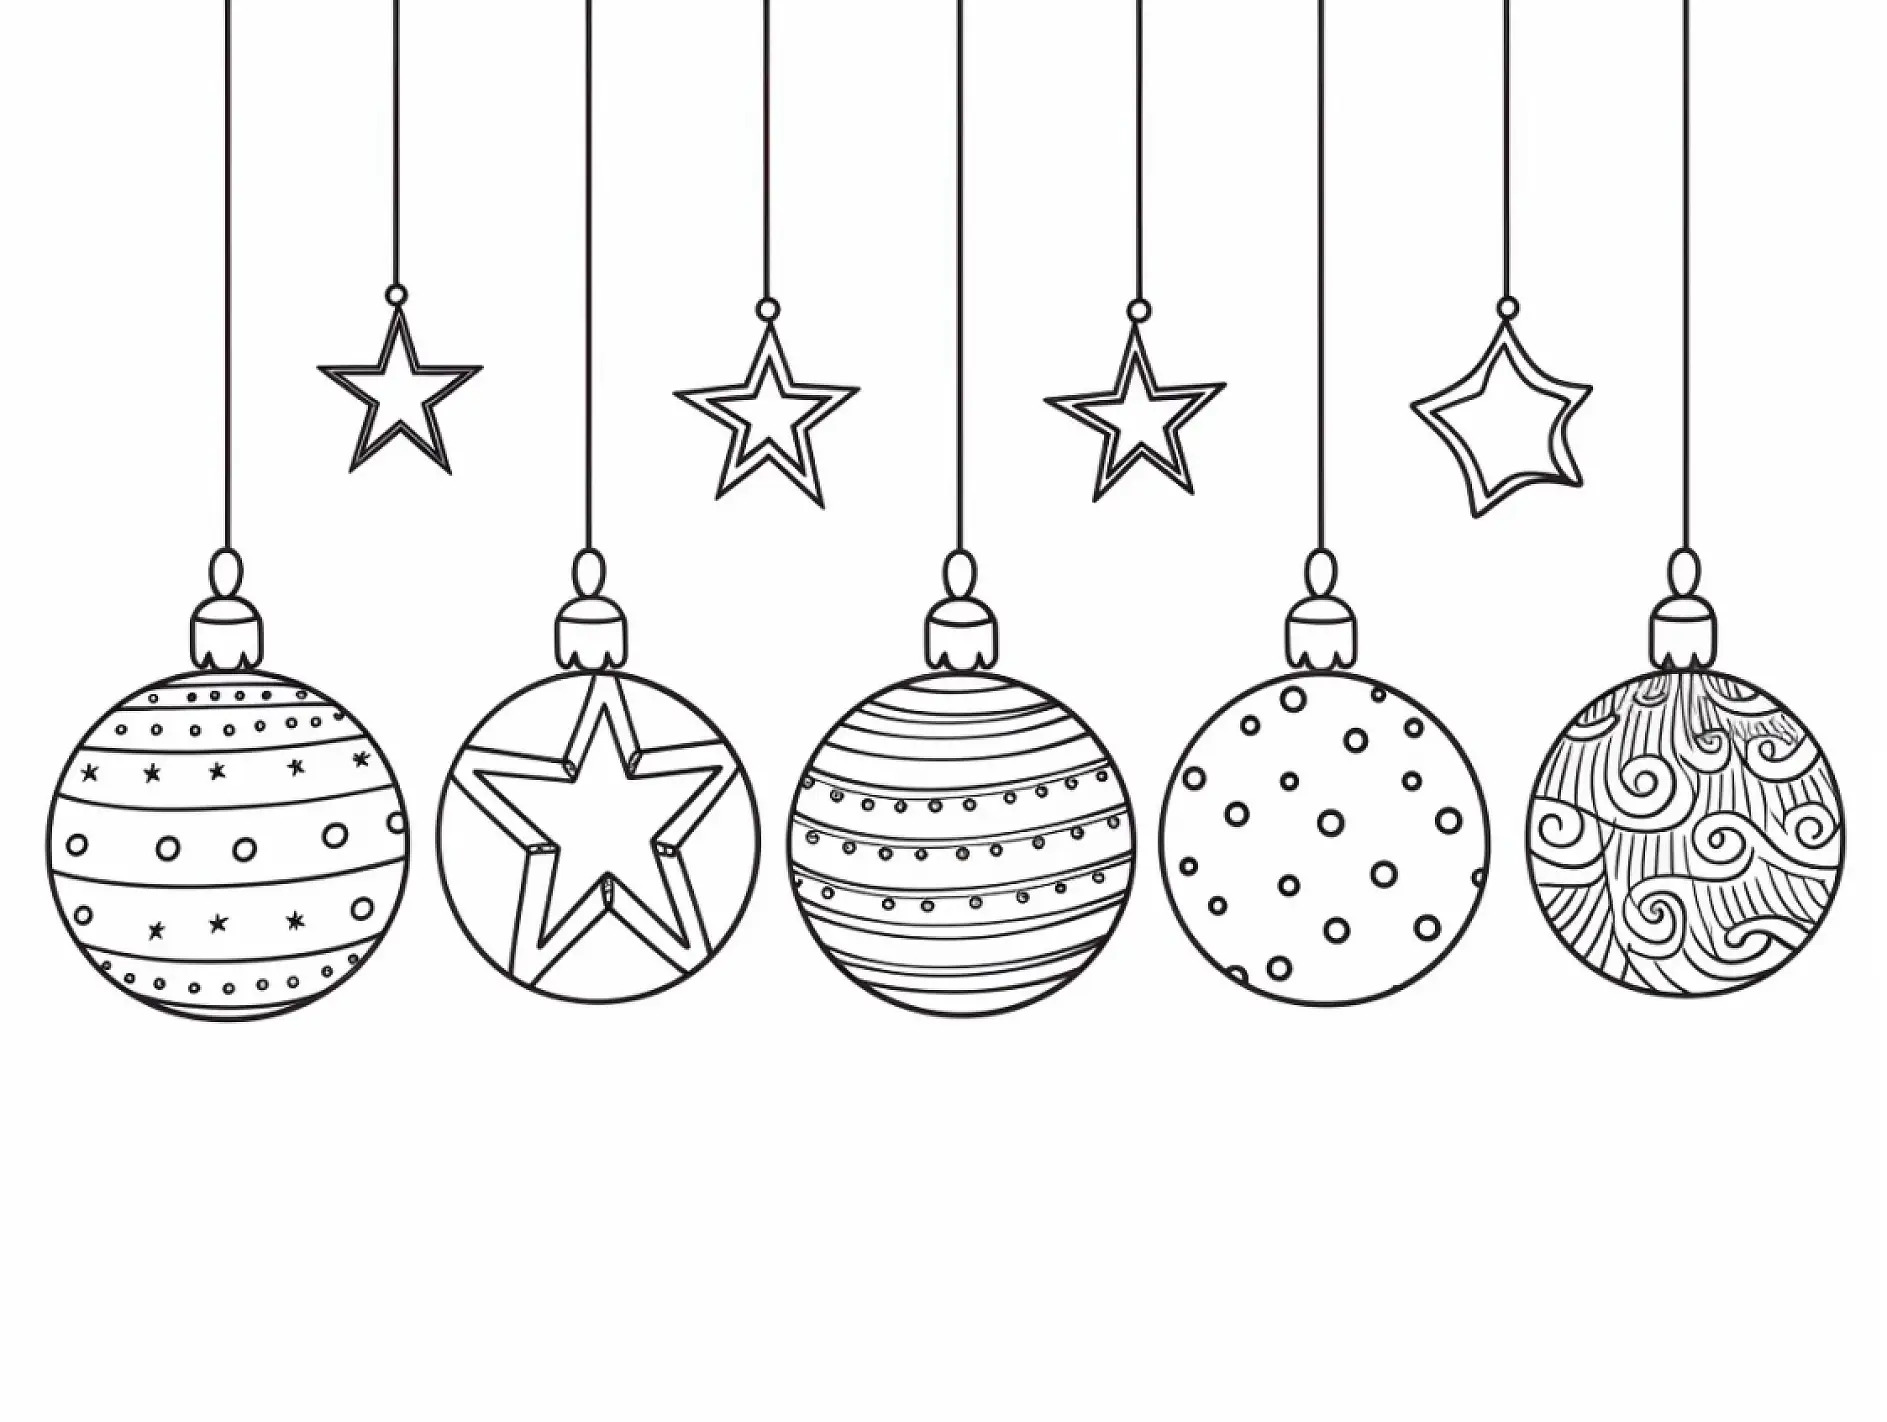 Ausmalbild von hängenden Weihnachtskugeln und Sternen mit Mustern